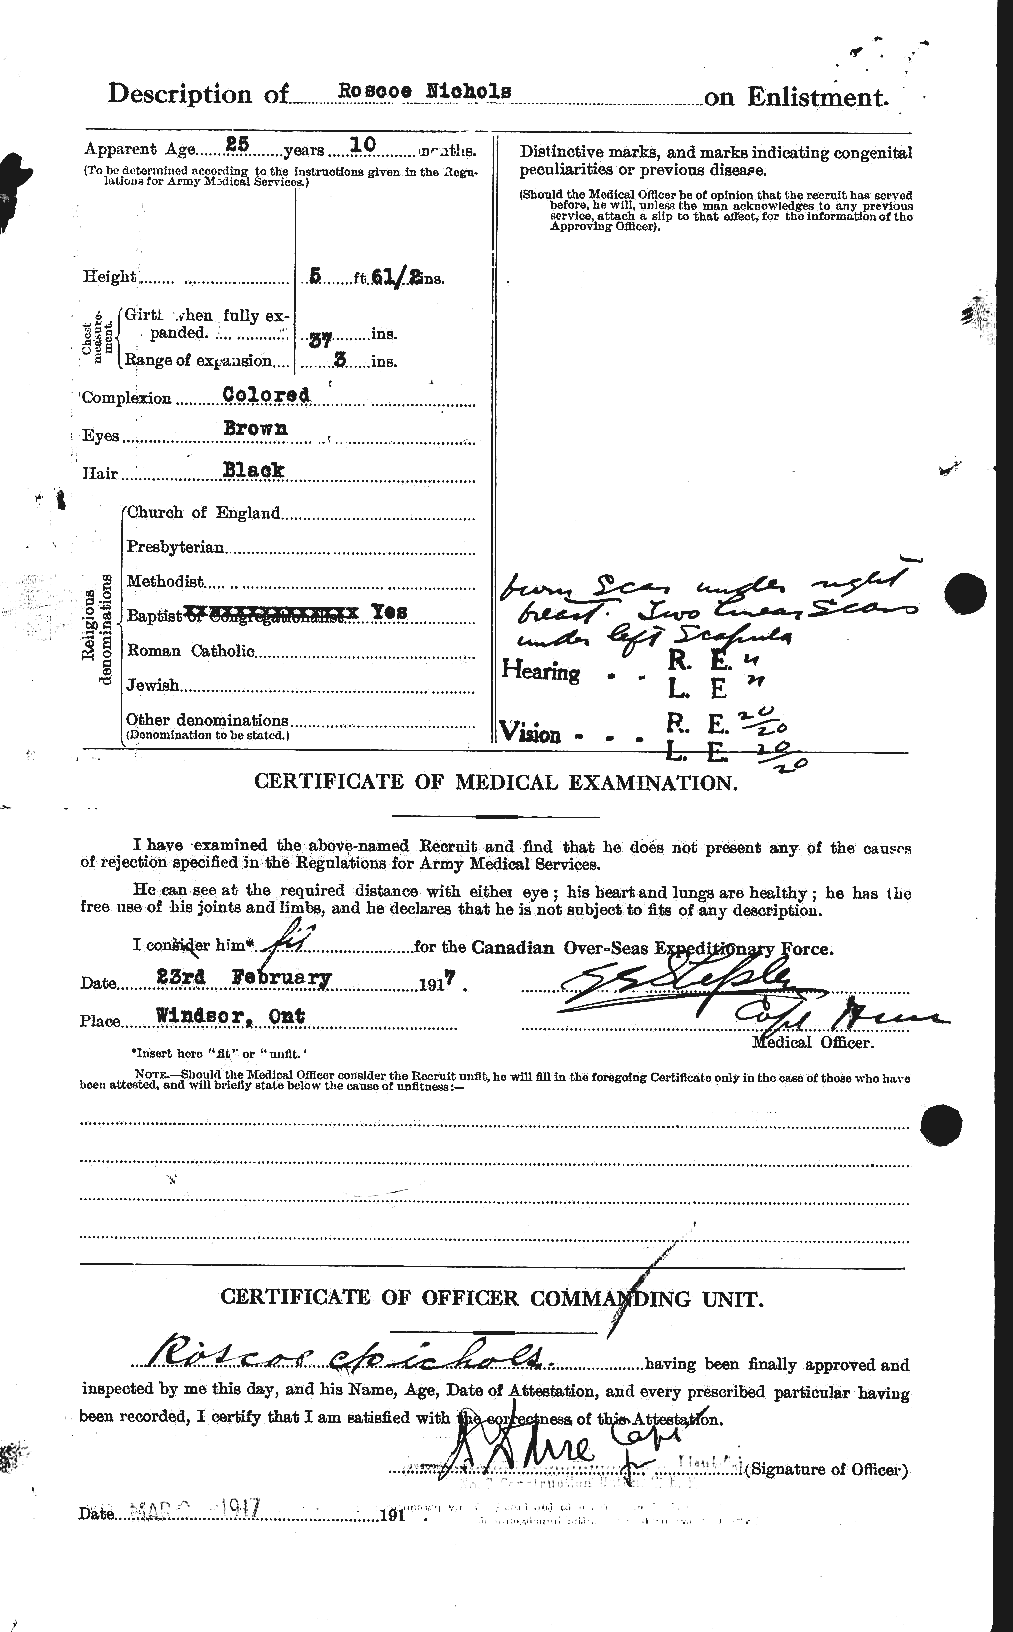 Dossiers du Personnel de la Première Guerre mondiale - CEC 551037b